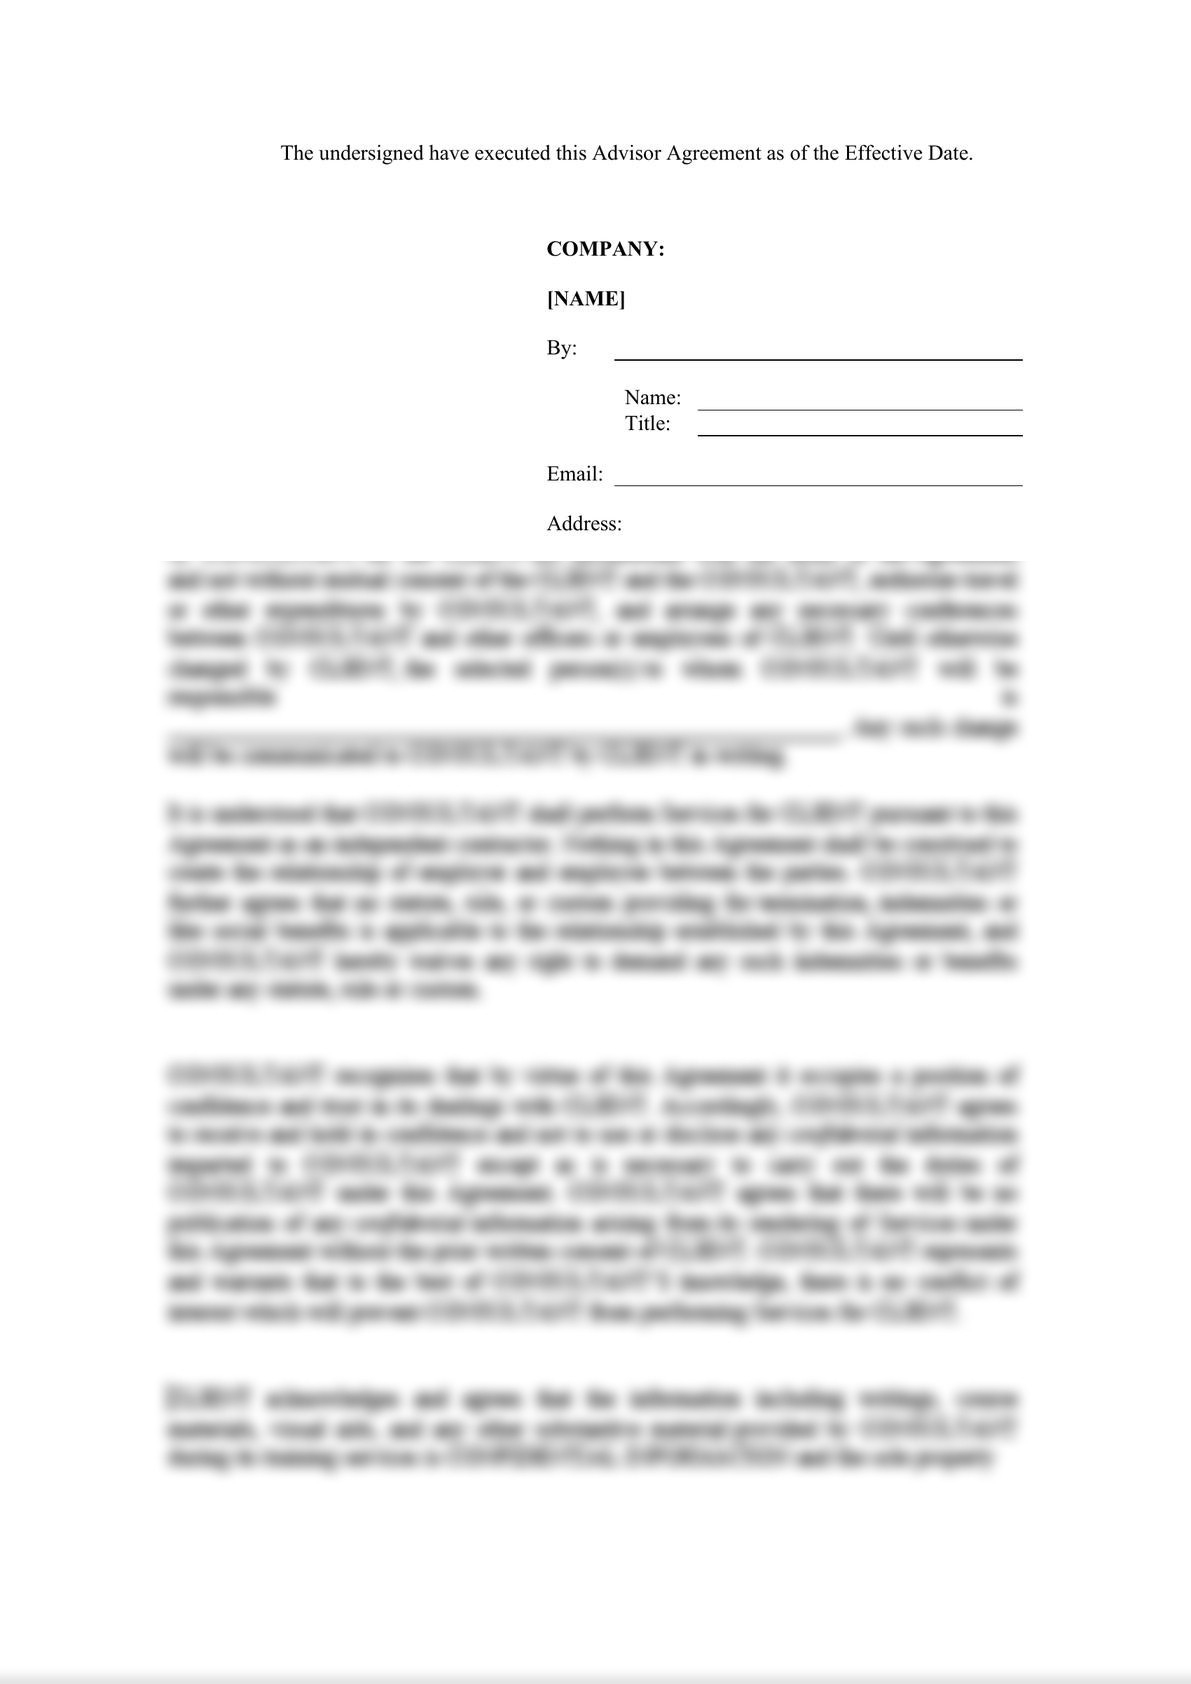 Form of Advisor Agreement-3